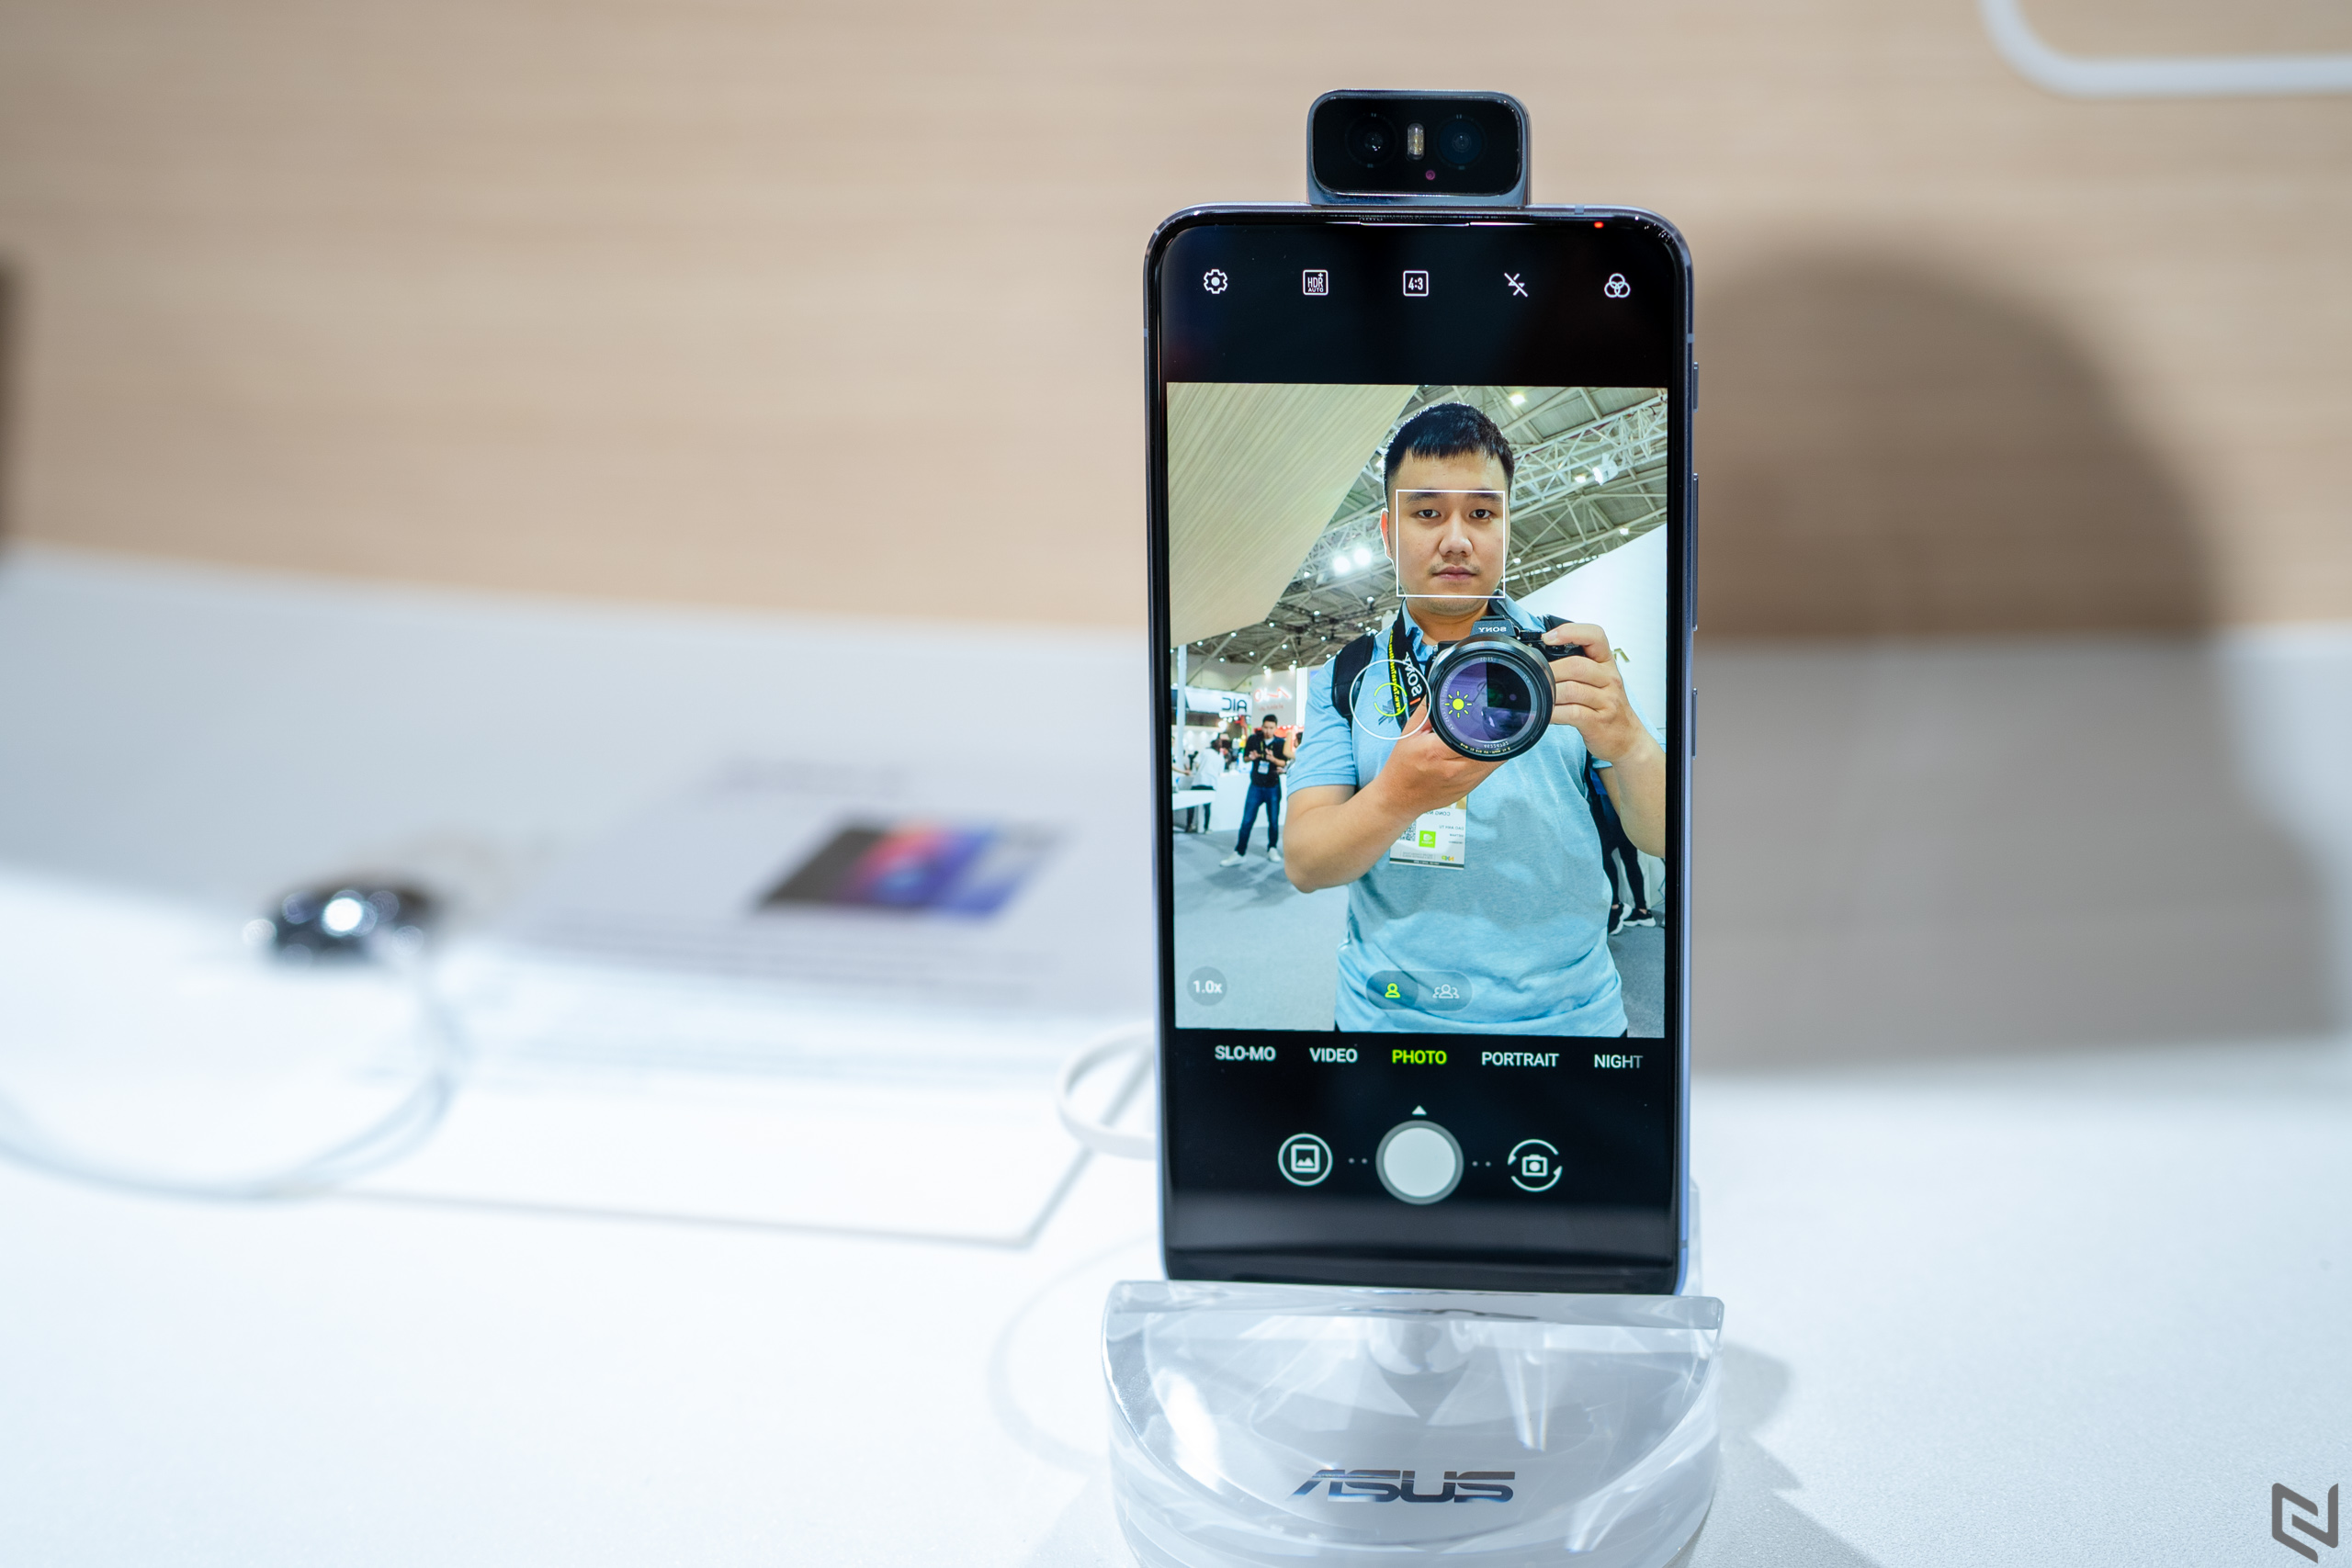 Trên tay ASUS Zenfone 6: Khác biệt với camera lật 180 độ, ngoại hình cao cấp, hiệu năng cao